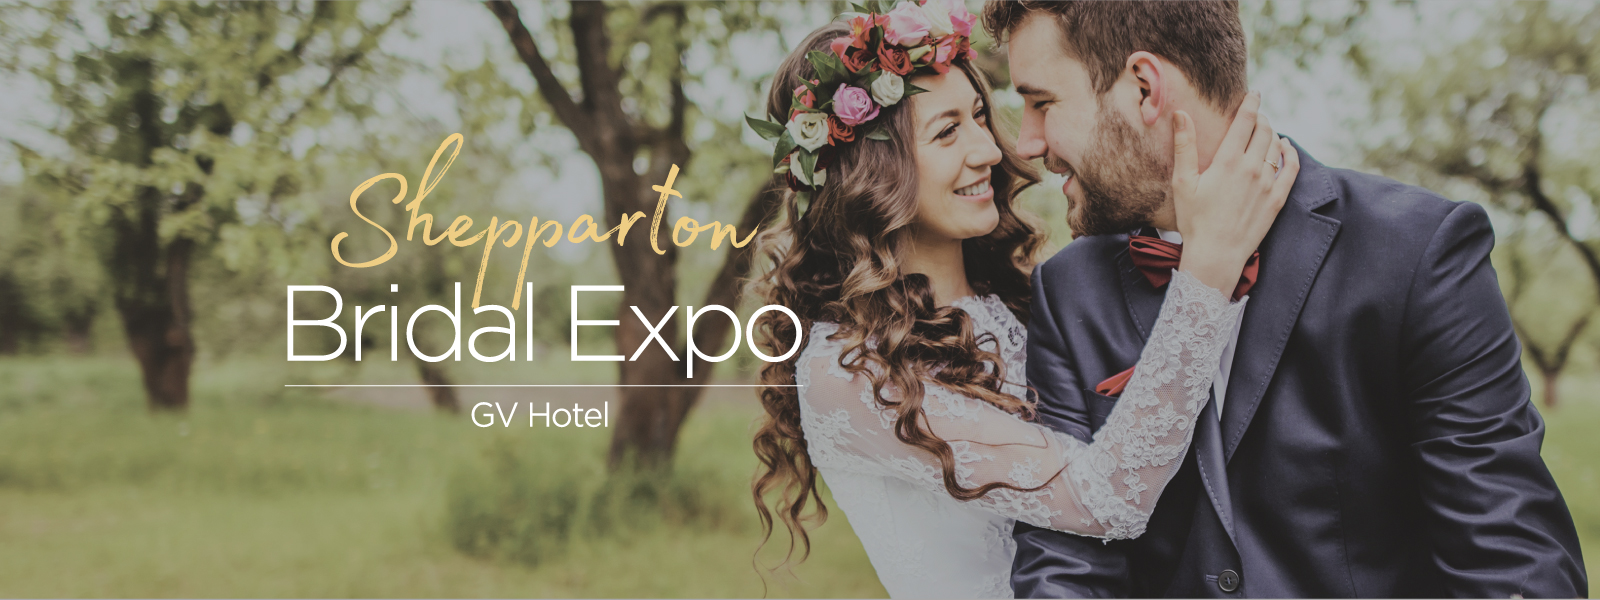 Shepparton Bridal Expo | Bridal Expos Australia